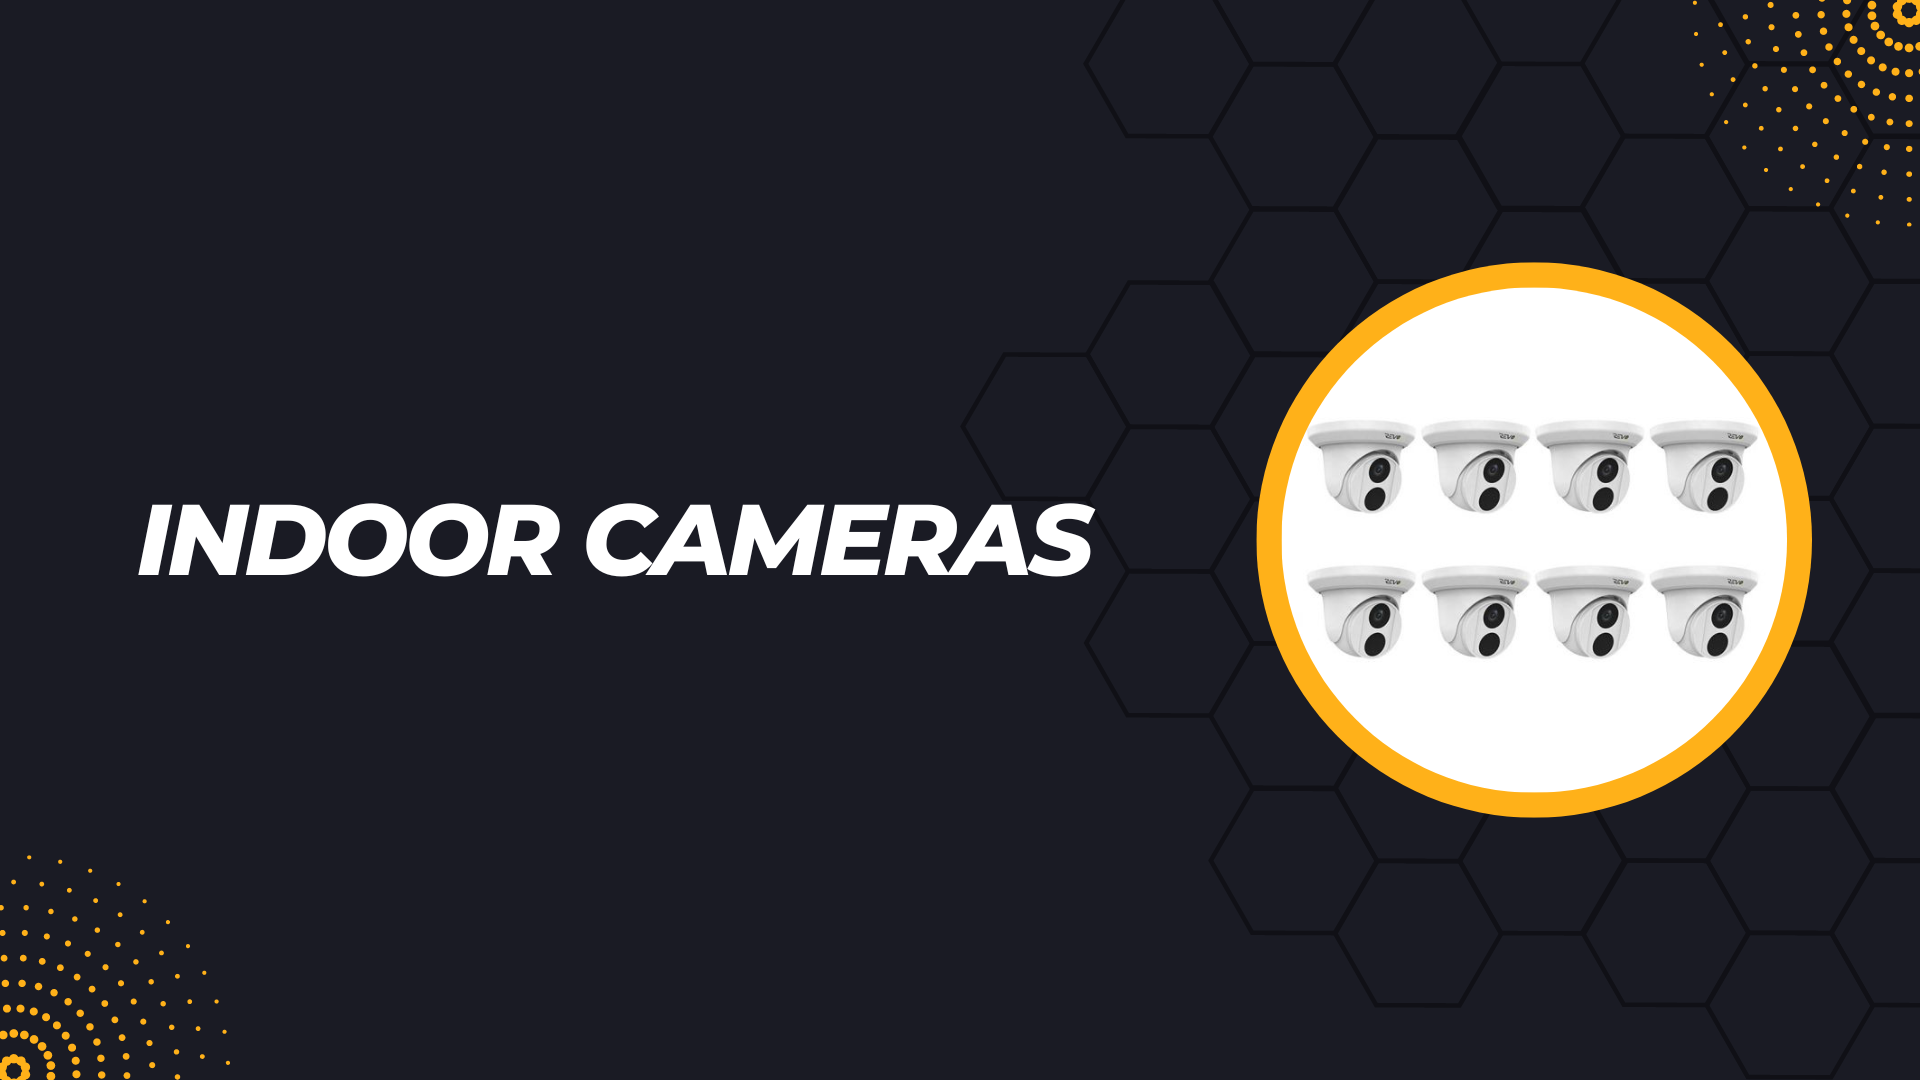 revo indoor cameras for automotive industry